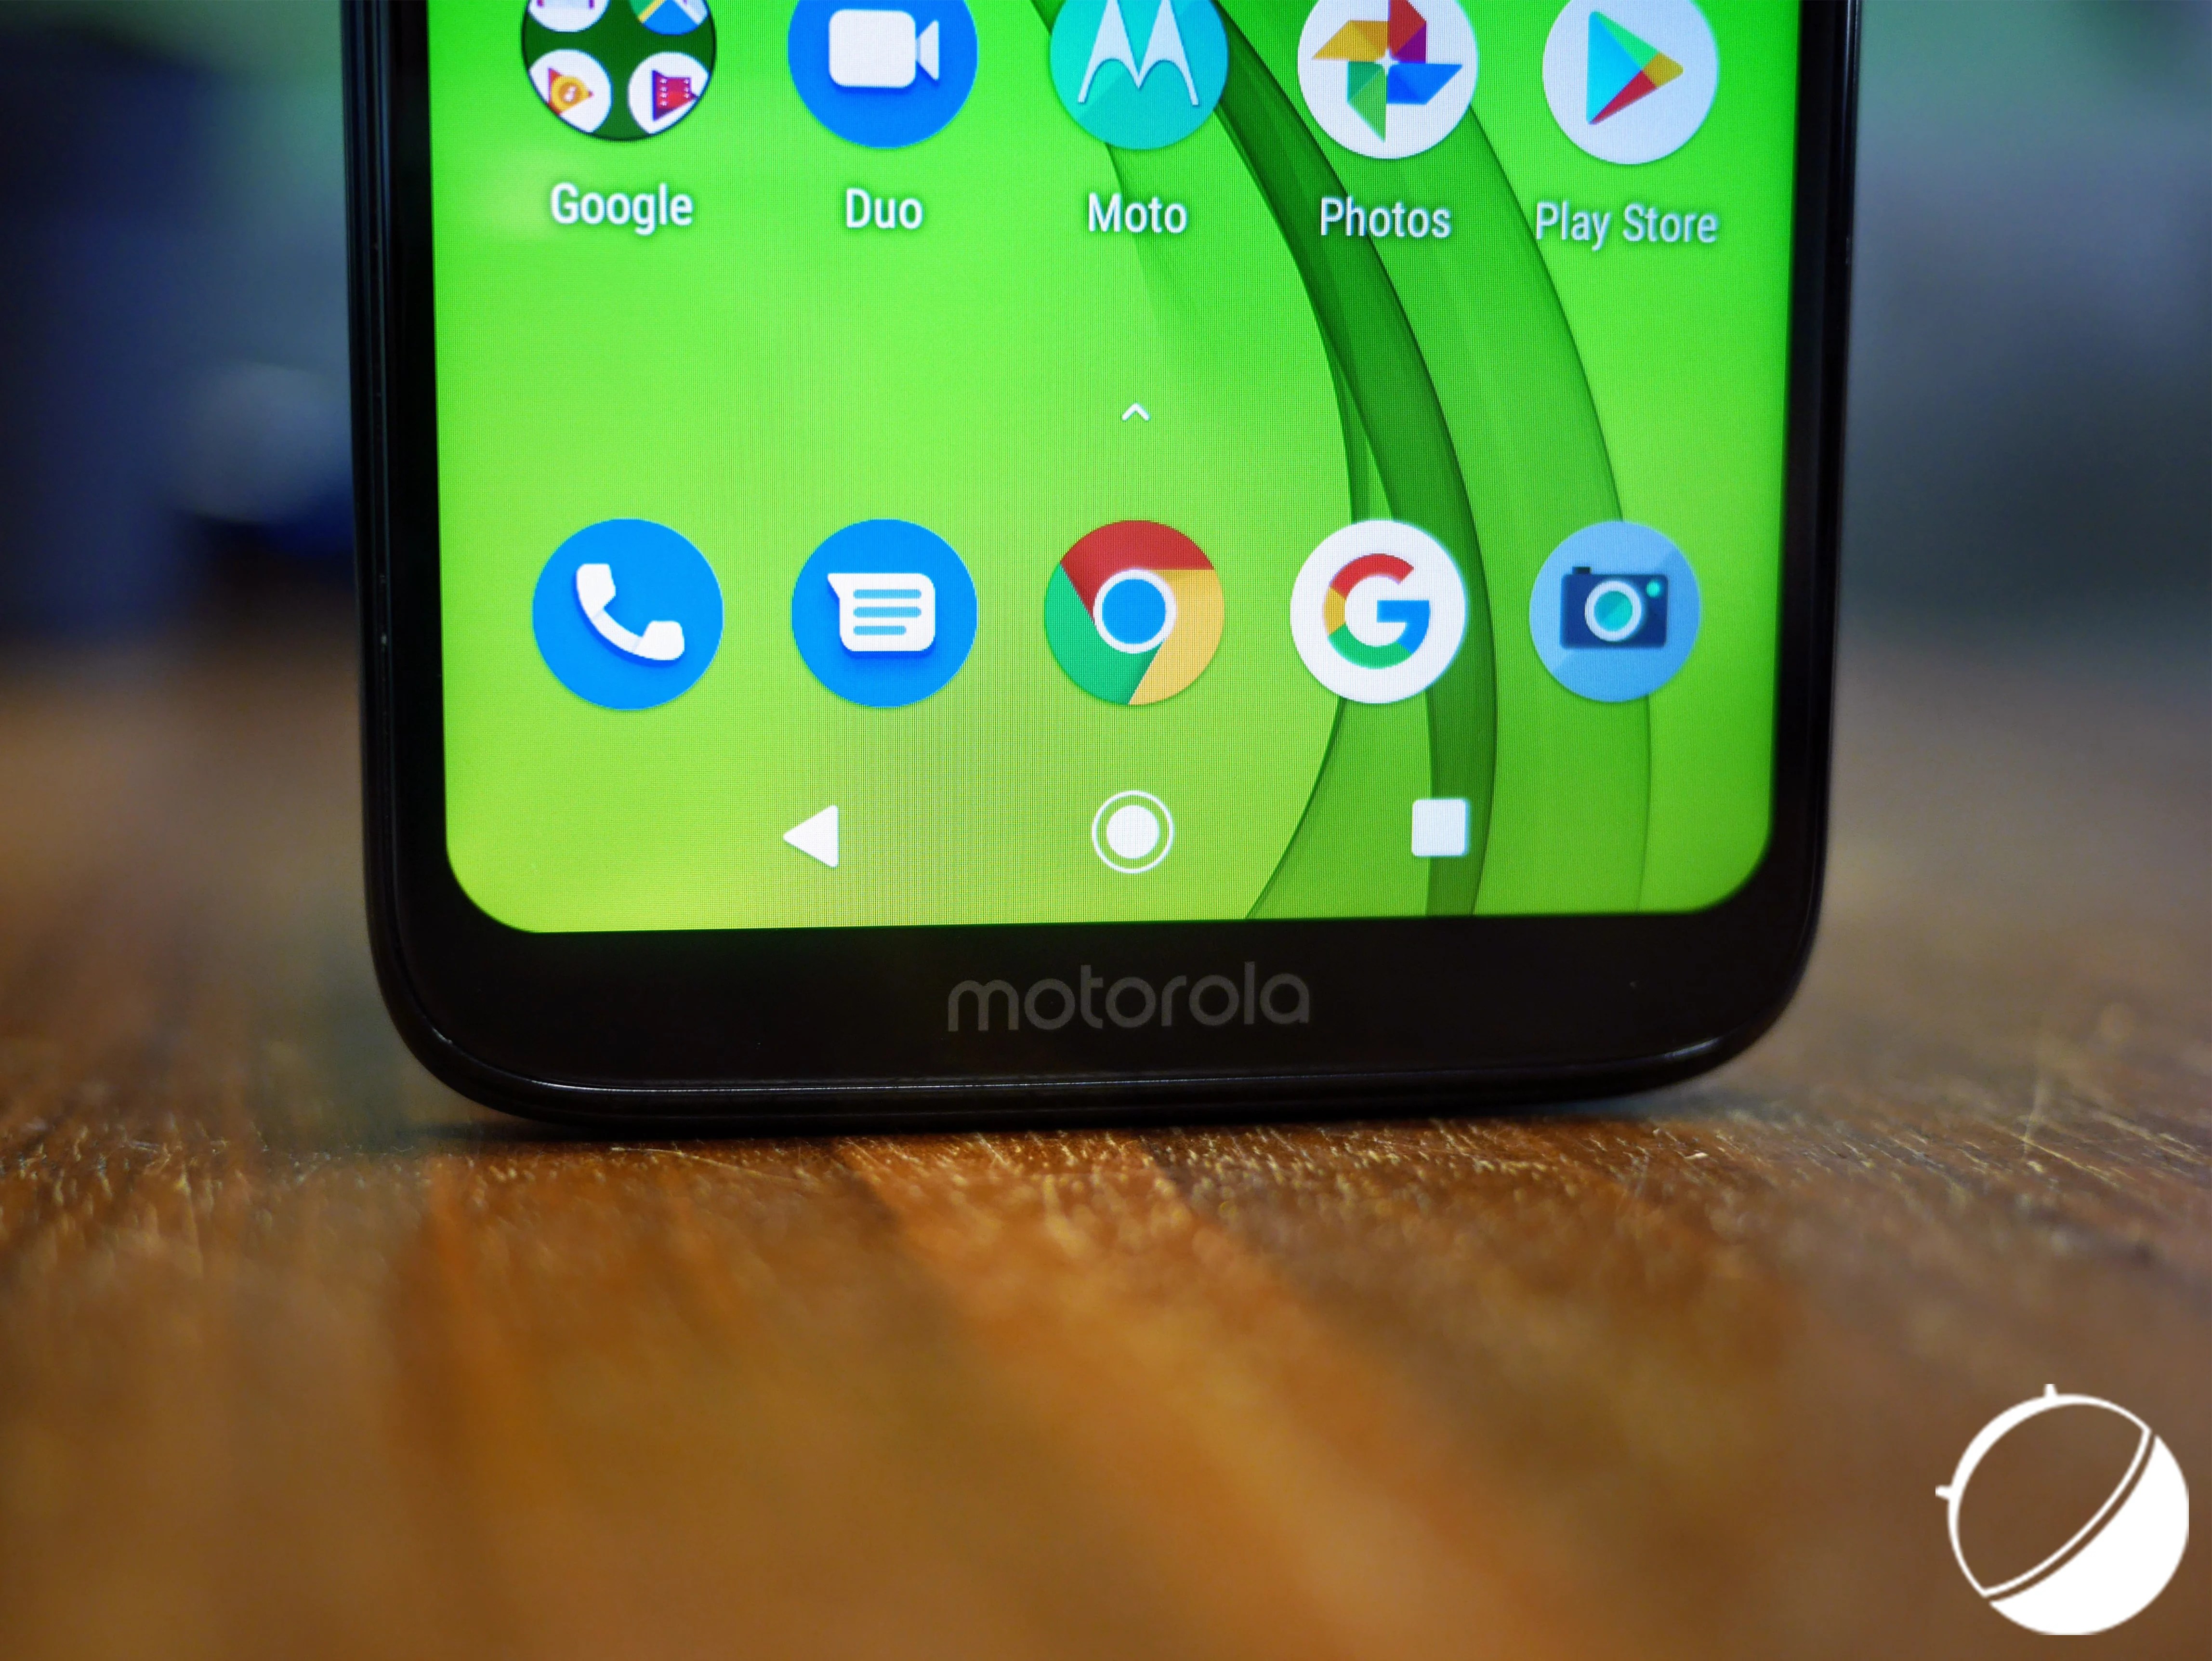 Le logo Motorola offre au menton une sorte "d'alibi"